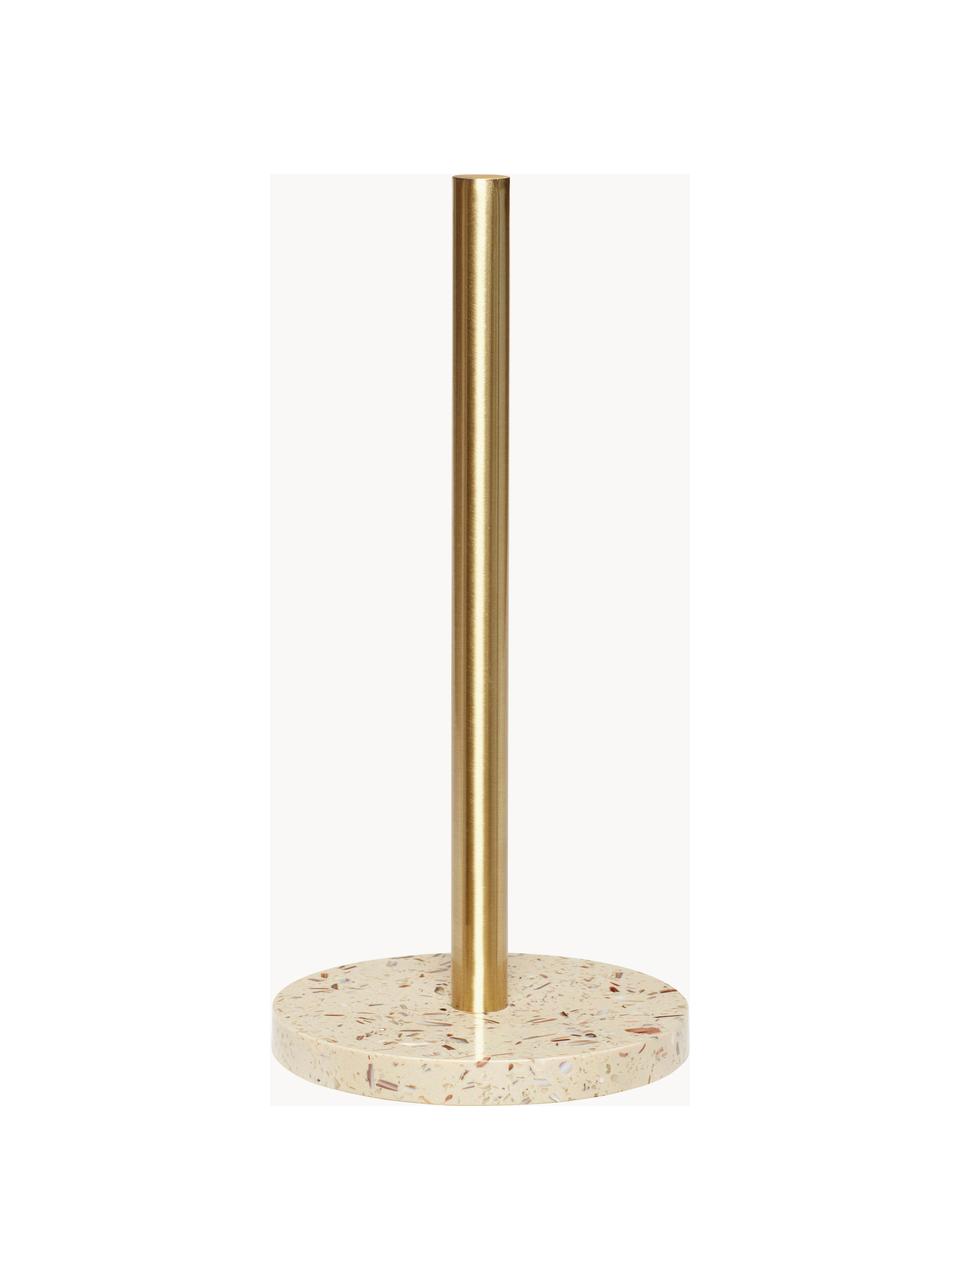 Küchenrollenhalter Pure, Fuß: Terrazzo, Stange: Metall, beschichtet, Goldfarben, Off White, Ø 14 x H 29 cm